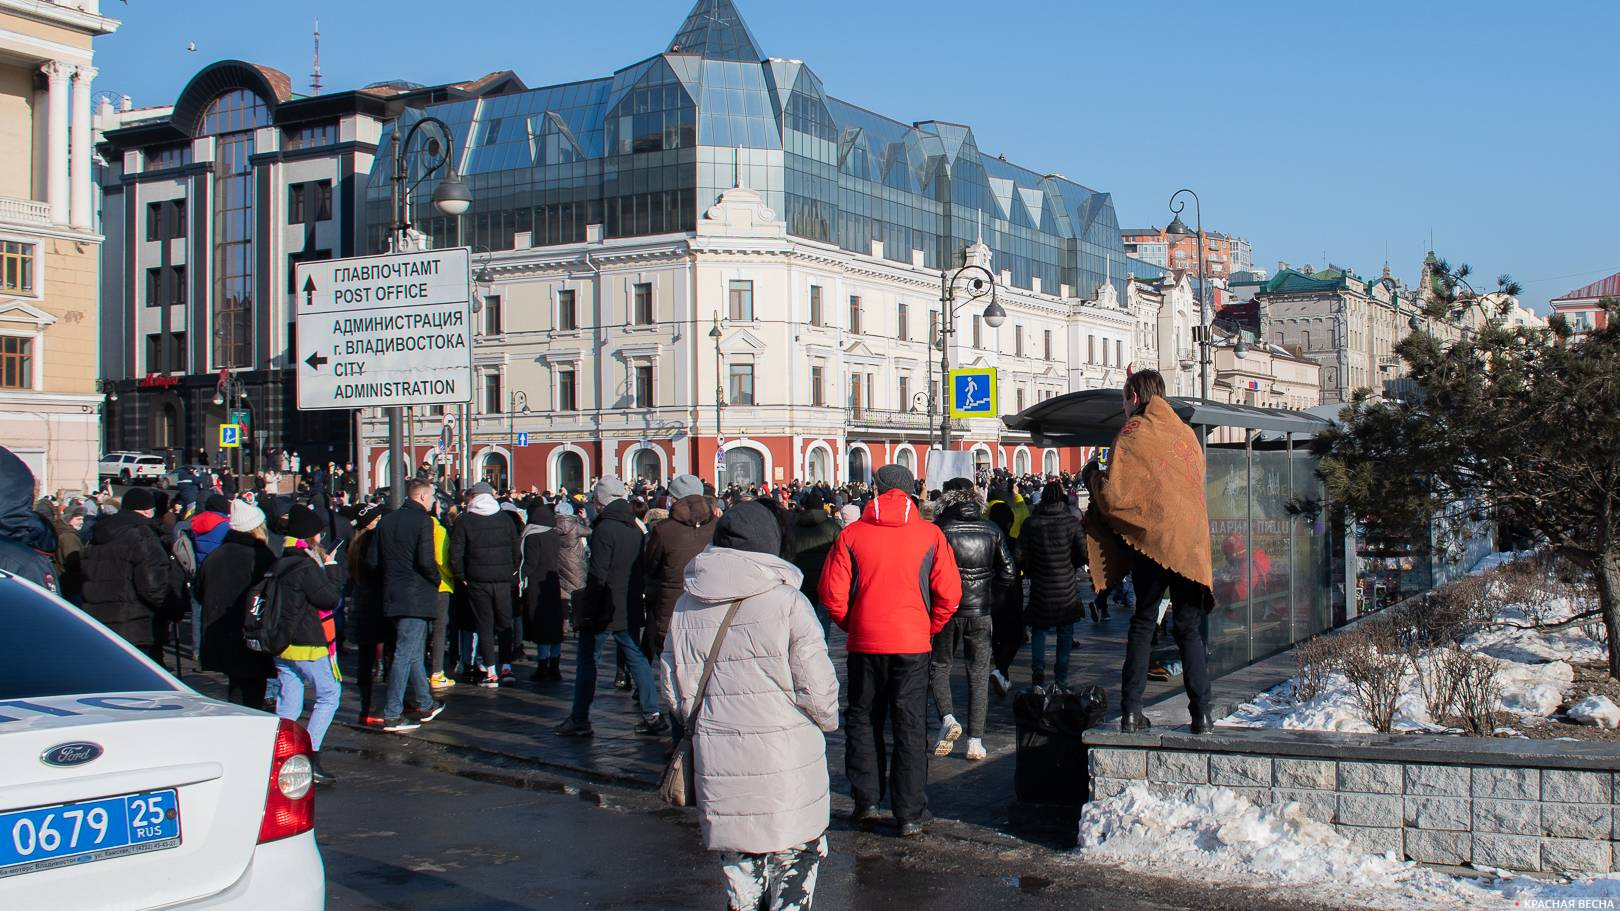 Митинг сторонников Навального во Владивостоке 23.01.2021. Символично